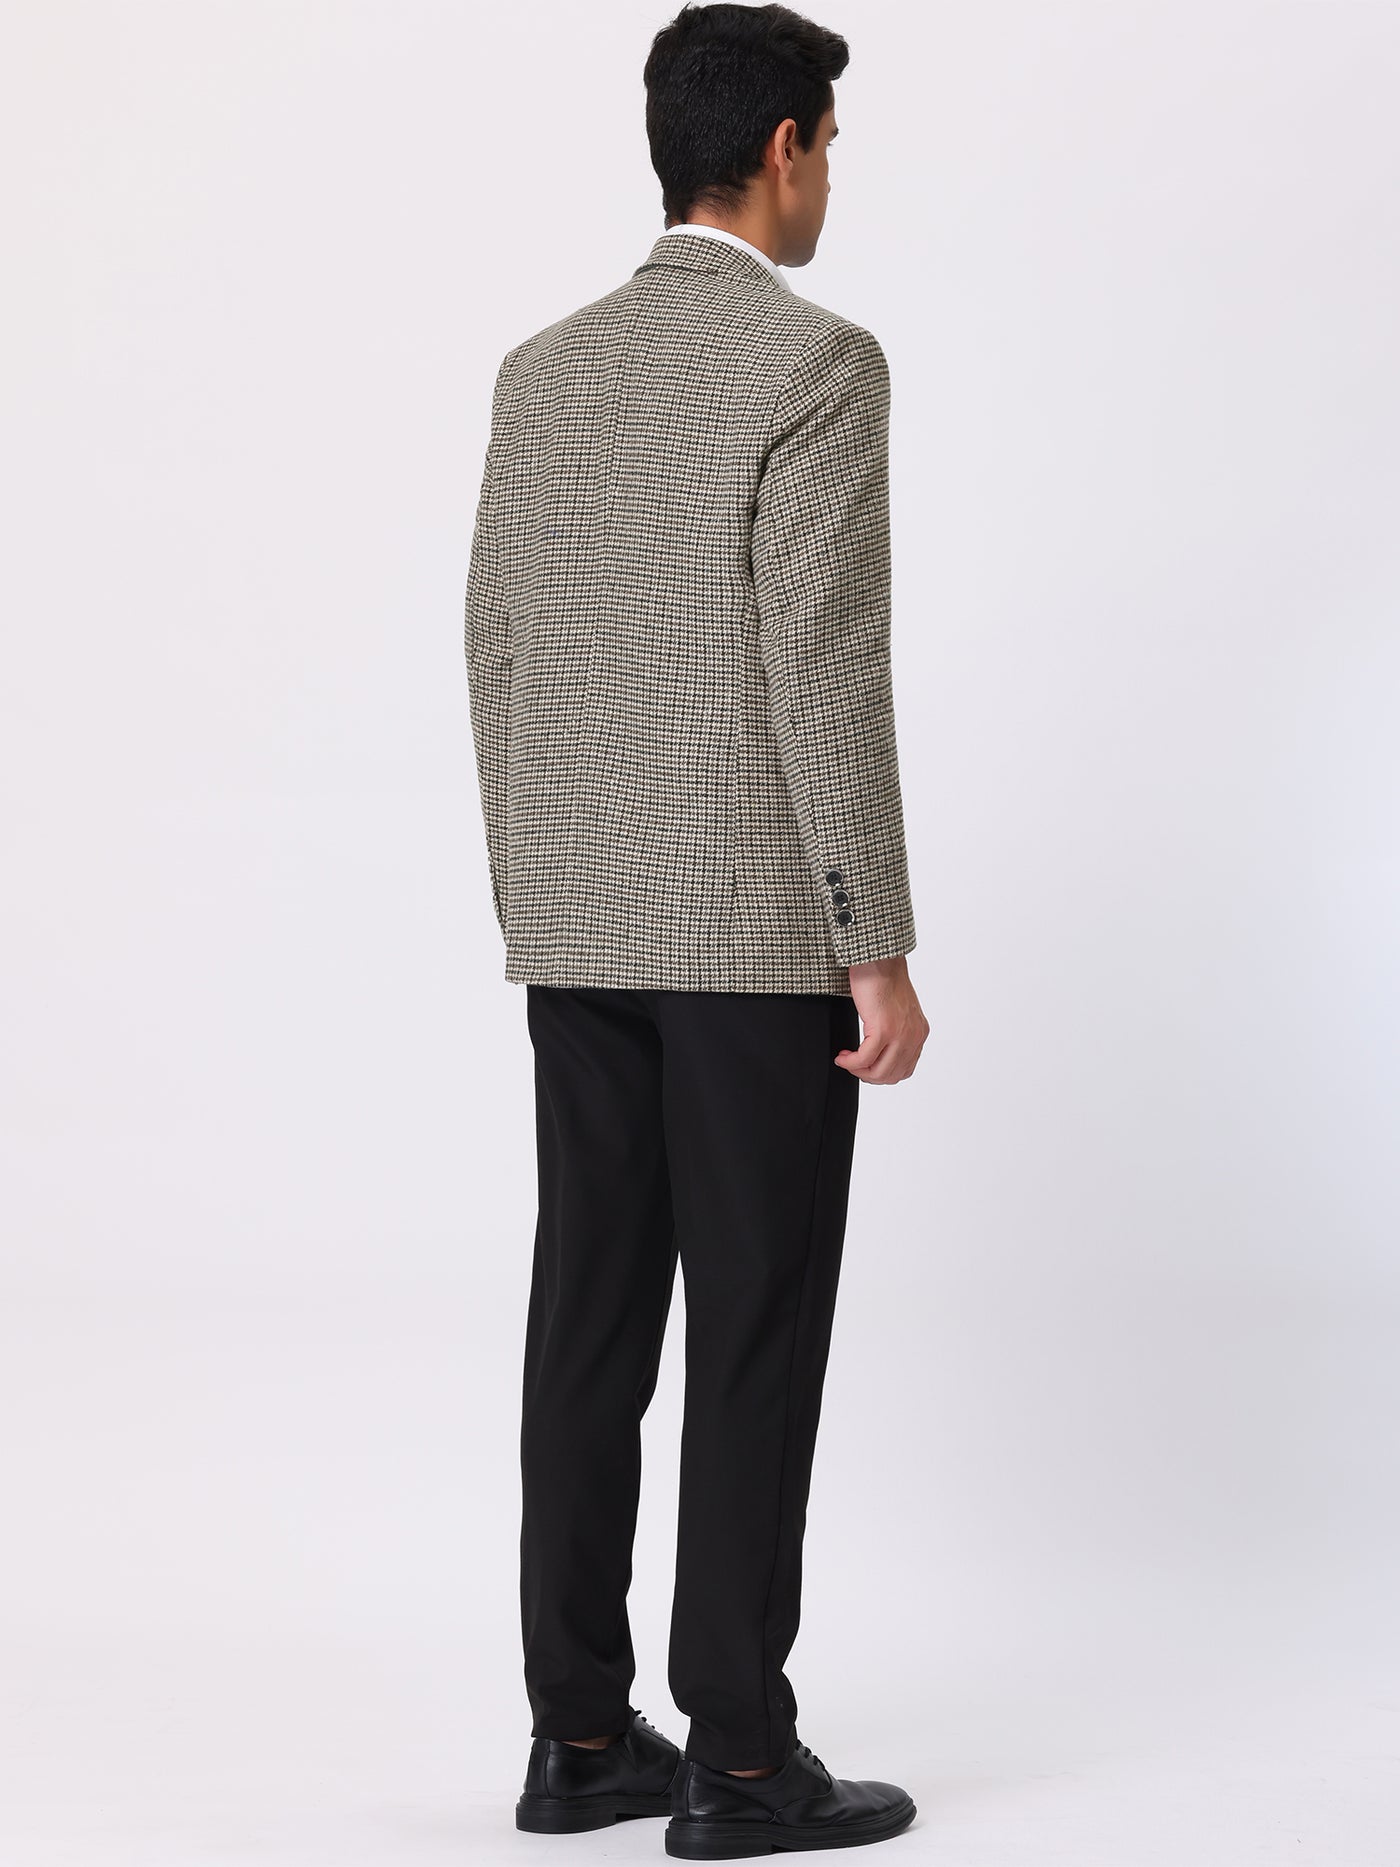 Bublédon Men's Houndstooth Blazer Notched Lapel Suit Jacket Plaid Sports Coat